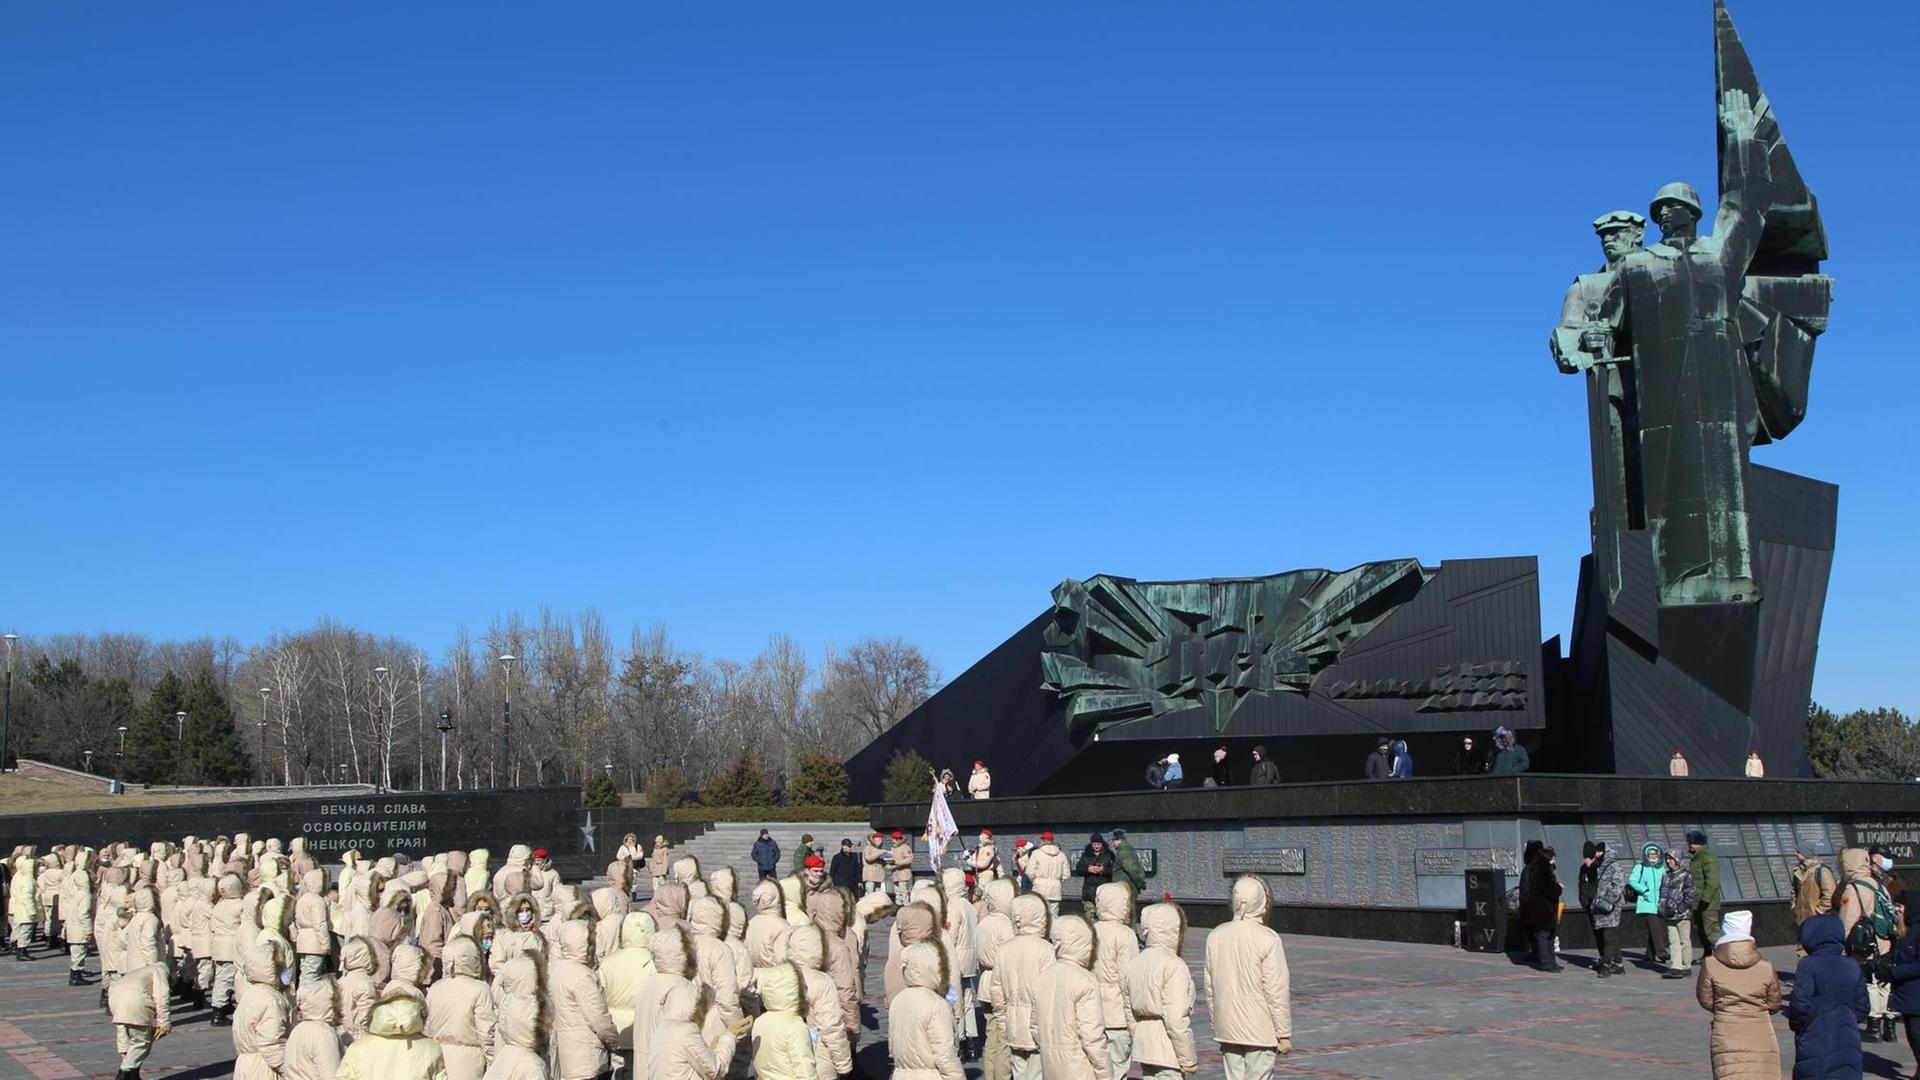 Mitglieder eines militärisch-patriotischen Clubs nehmen an einer Blumenniederlegung am Denkmal für die Soldaten teil, die die Donbass-Region während des Großen Vaterländischen Krieges befreit haben, in Donezk, DPR, Ukraine.